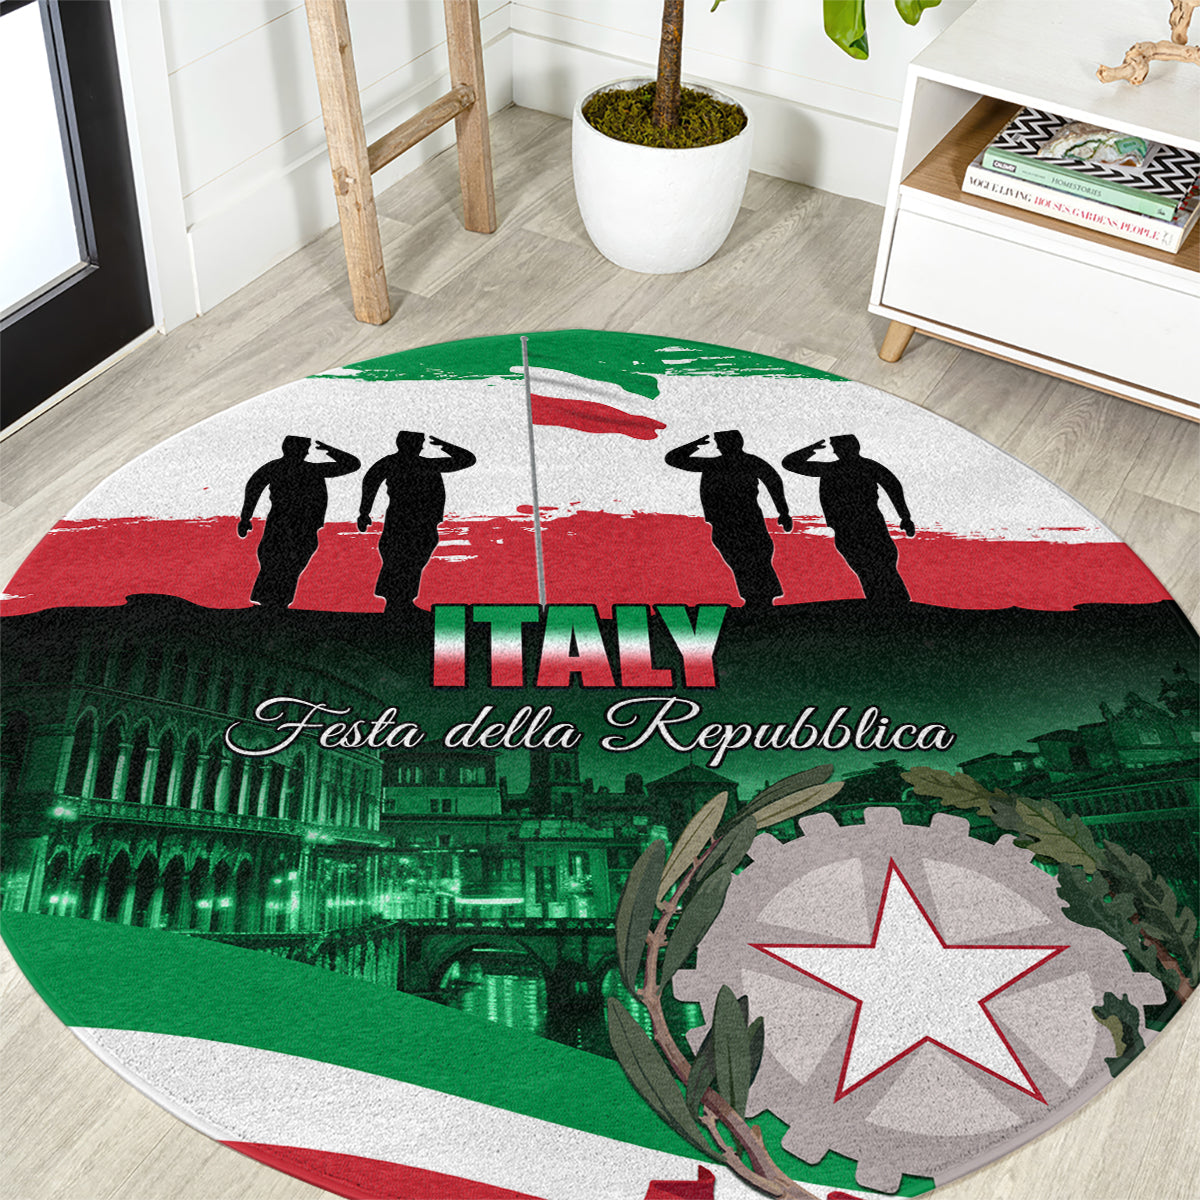 Italy Republic Day Round Carpet Festa della Repubblica